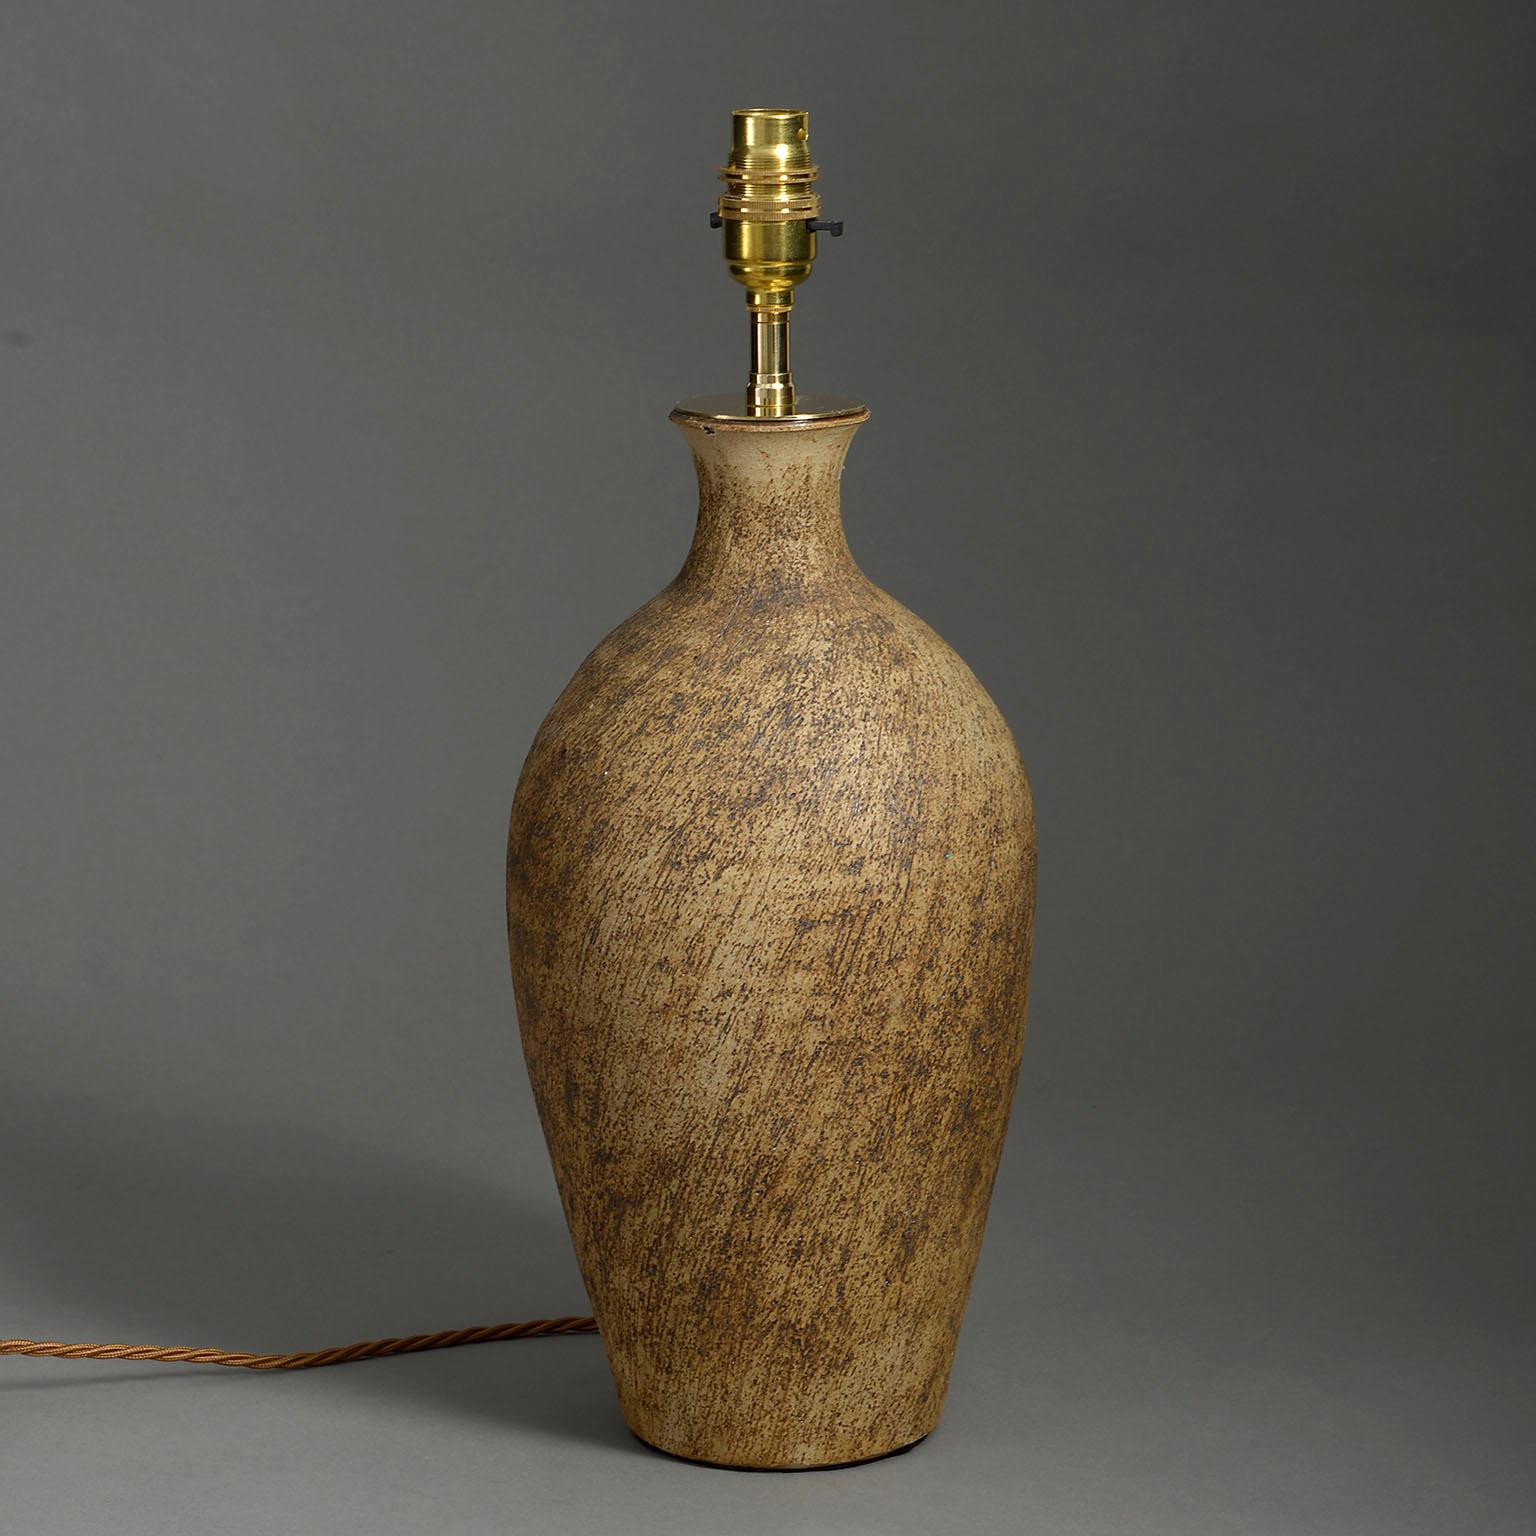 Eine Terrakotta-Flasche aus der Mitte des 20. Jahrhunderts mit gebürsteter Oberfläche, montiert als Lampenfuß.

Die Abmessungen beziehen sich nur auf das Keramikteil.

Verkabelt nach britischem Standard. Diese Lampe kann nach allen internationalen